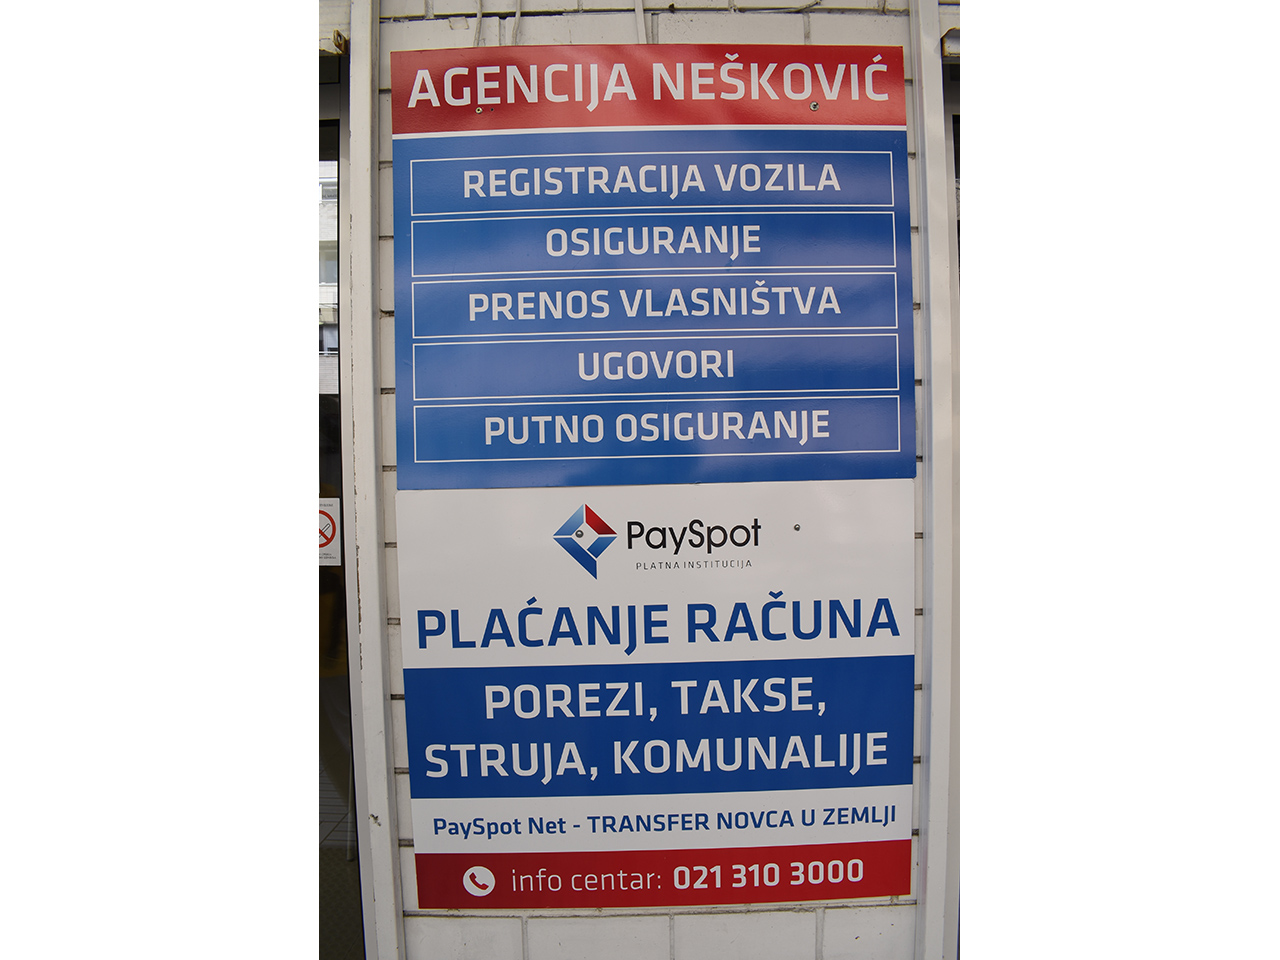 Slika 4 - AGENCIJA NEŠKOVIĆ Auto osiguranje Beograd